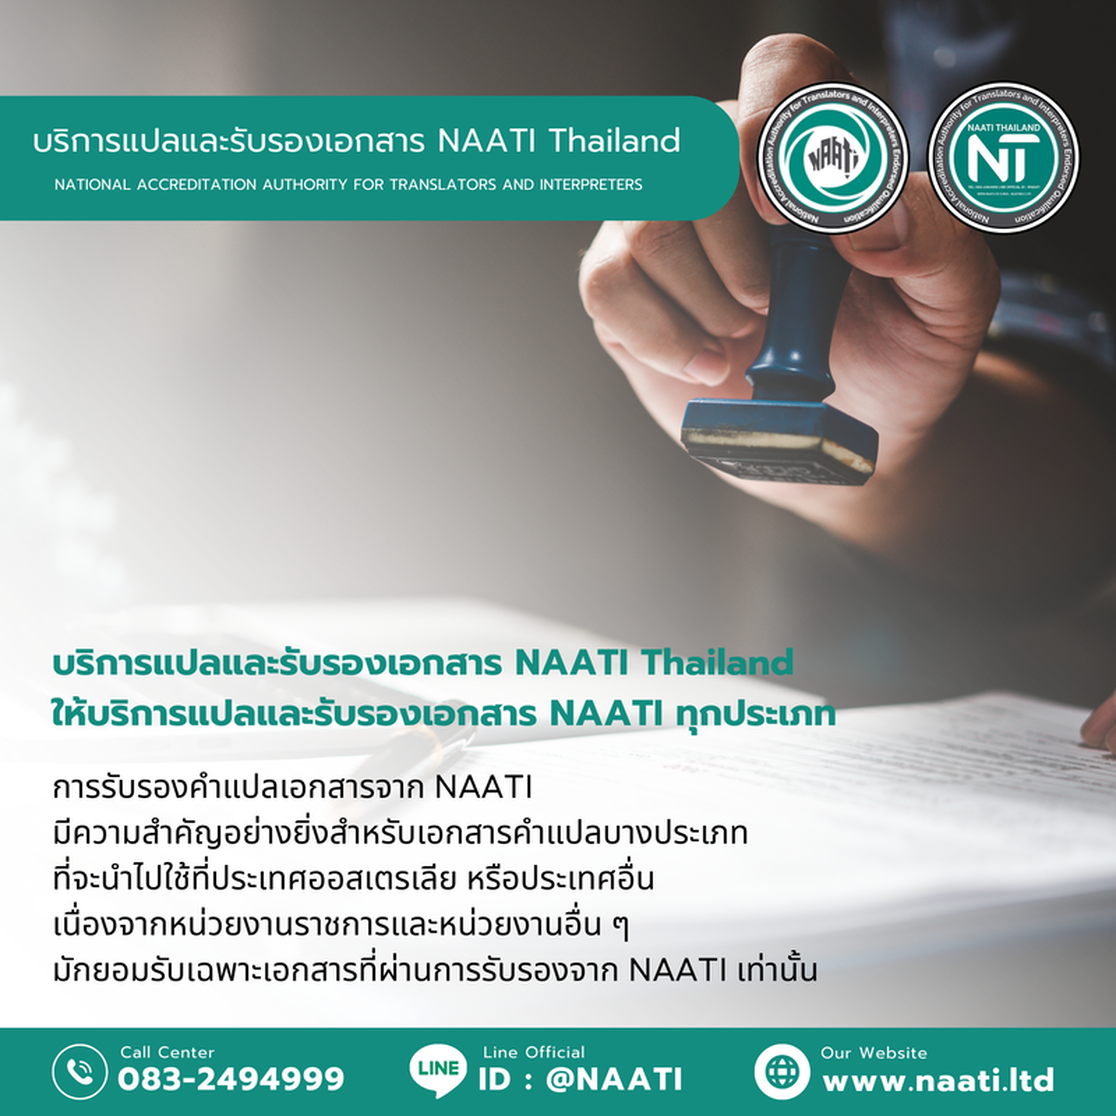 สำนักงานกฎหมายแปลภาษา, รับรอง NAATI, แปลภาษาด้านกฎหมาย, มาตรฐานสากล, บริการแปลออนไลน์, Legal Translation Office, NAATI Certification, Law Language Translation, International Standards, Online Translation Services